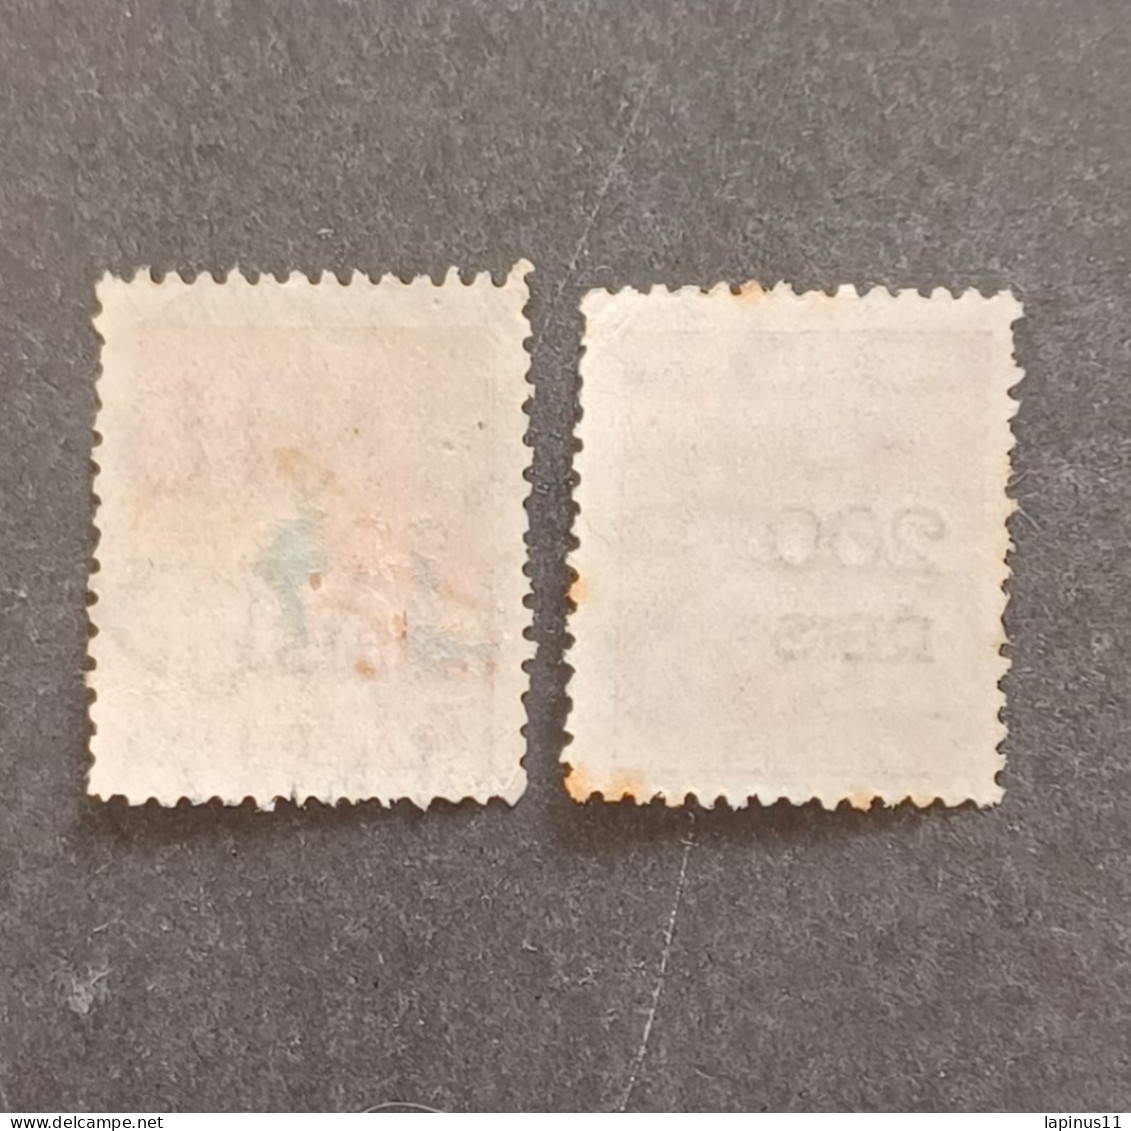 BRASILE 1933 MERCURY SCOTT N 356a WMK ERROR - Used Stamps